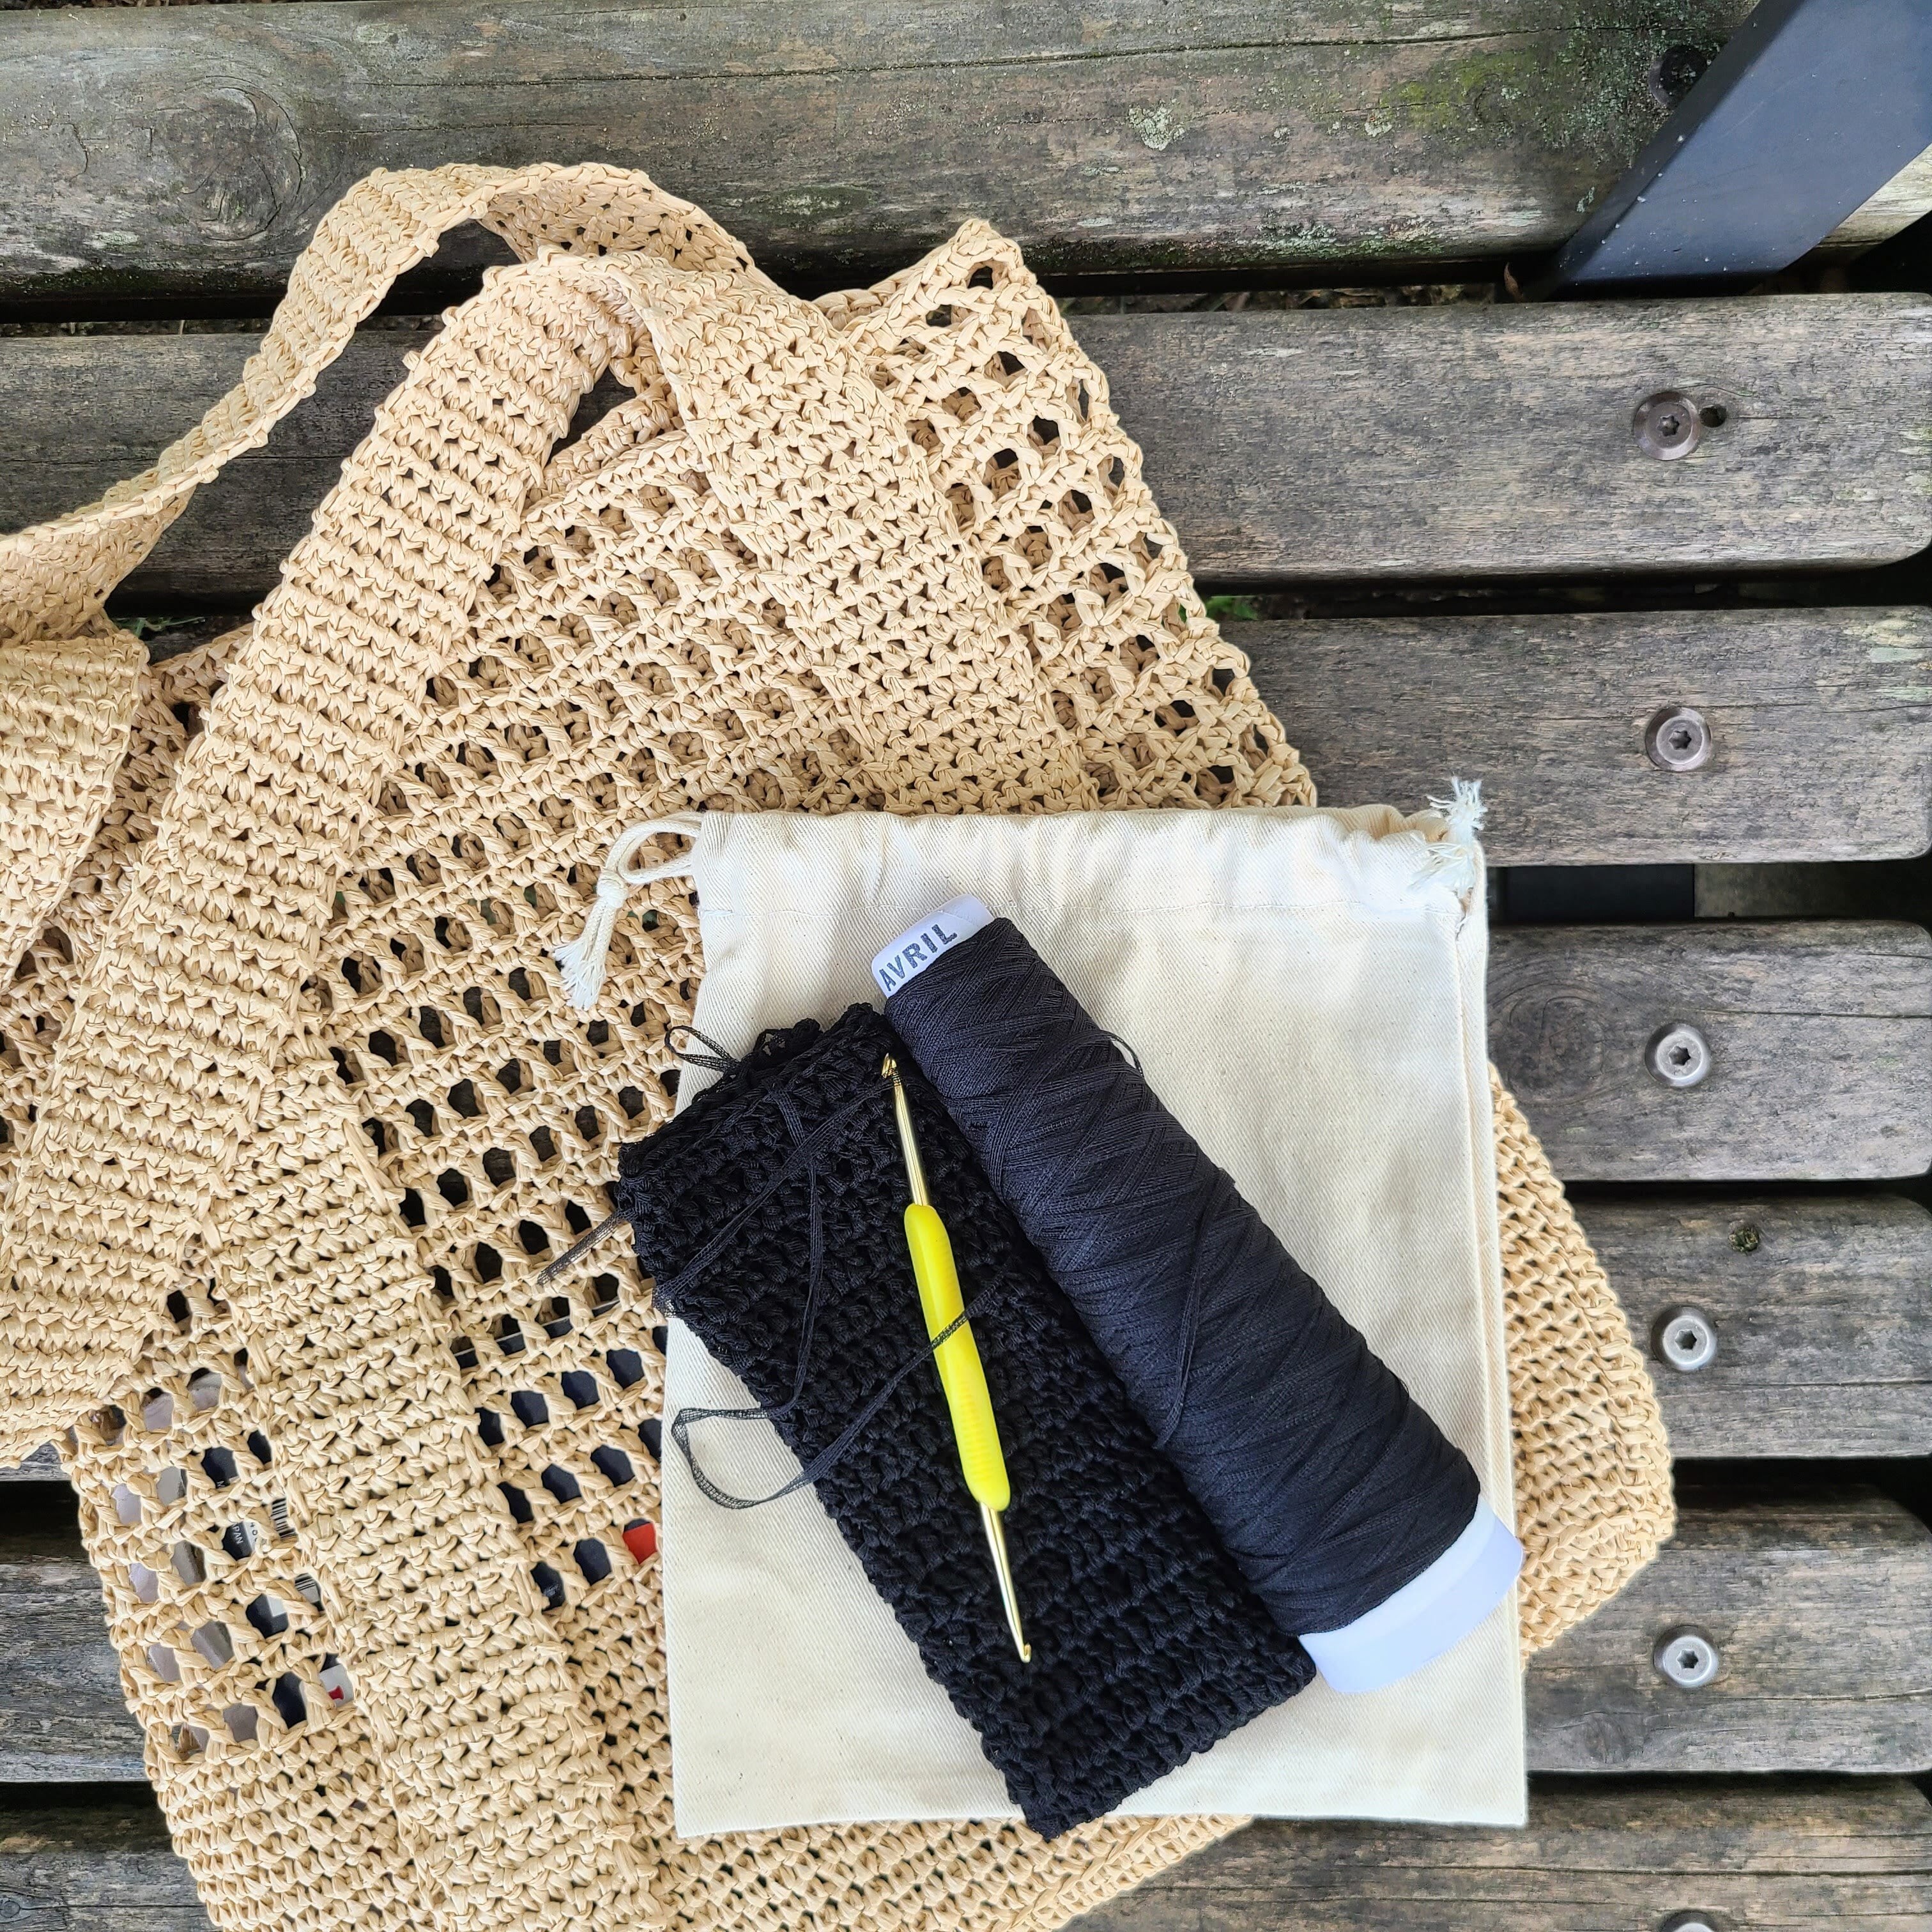 格安人気 ProCase 編み物用バッグ 蓋付き 毛糸 編み針 編み物用品 未完成品 収納 持ち運び 便利(バッグのみ)-パープル 通販 